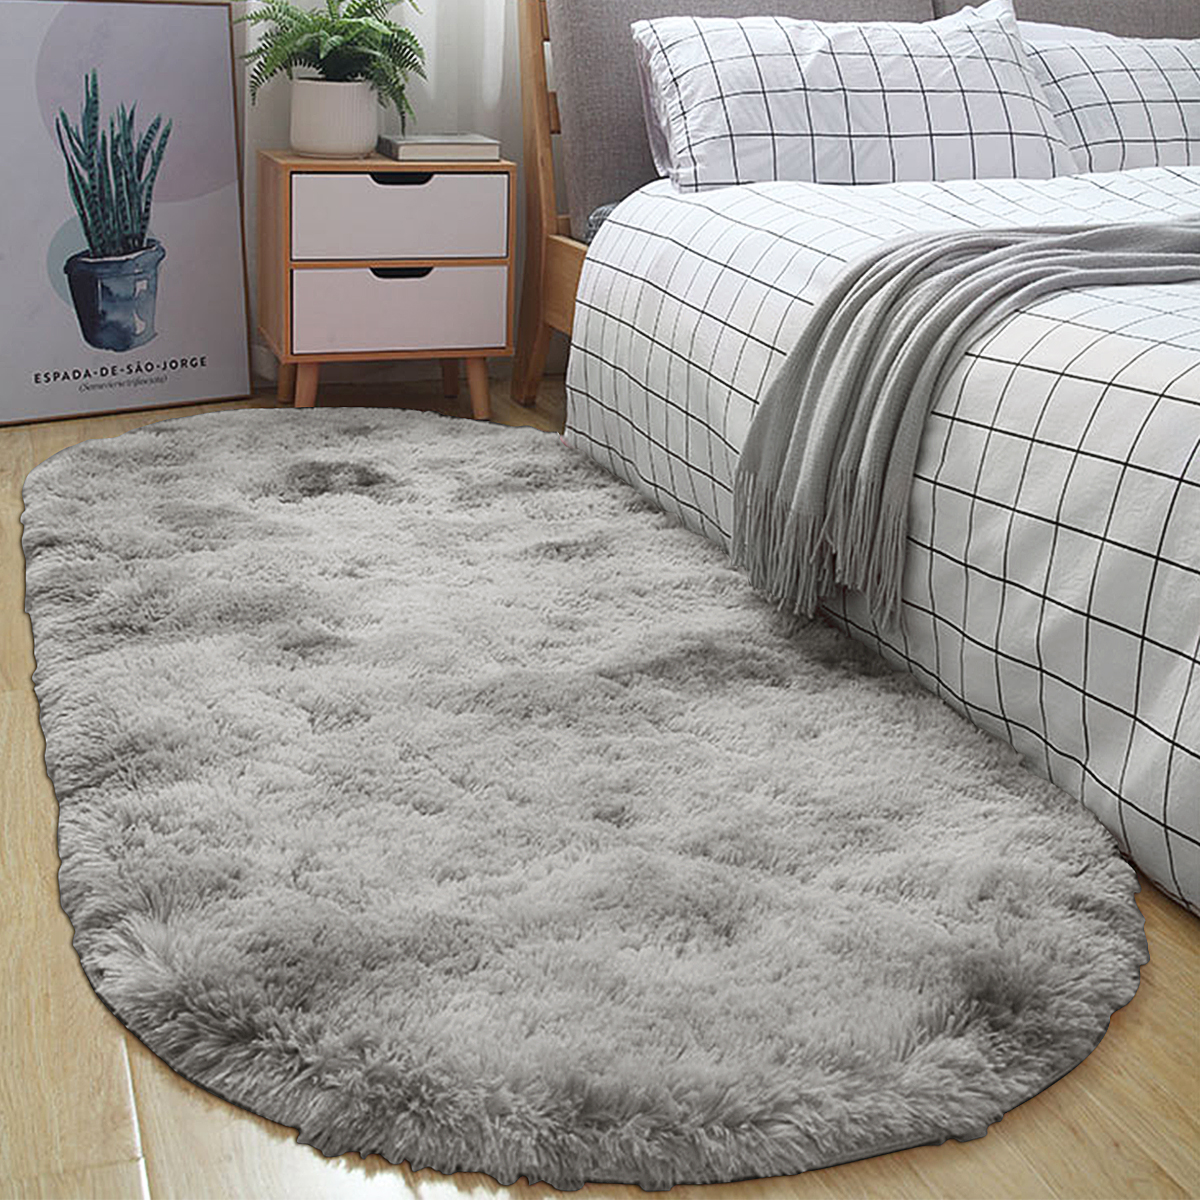 Long-Variegated-Tie-dye-Gradient-Carpet-Living-Room-Bedroom-Bedside-Blanket-Coffee-Table-Cushion-Ful-1730424-3